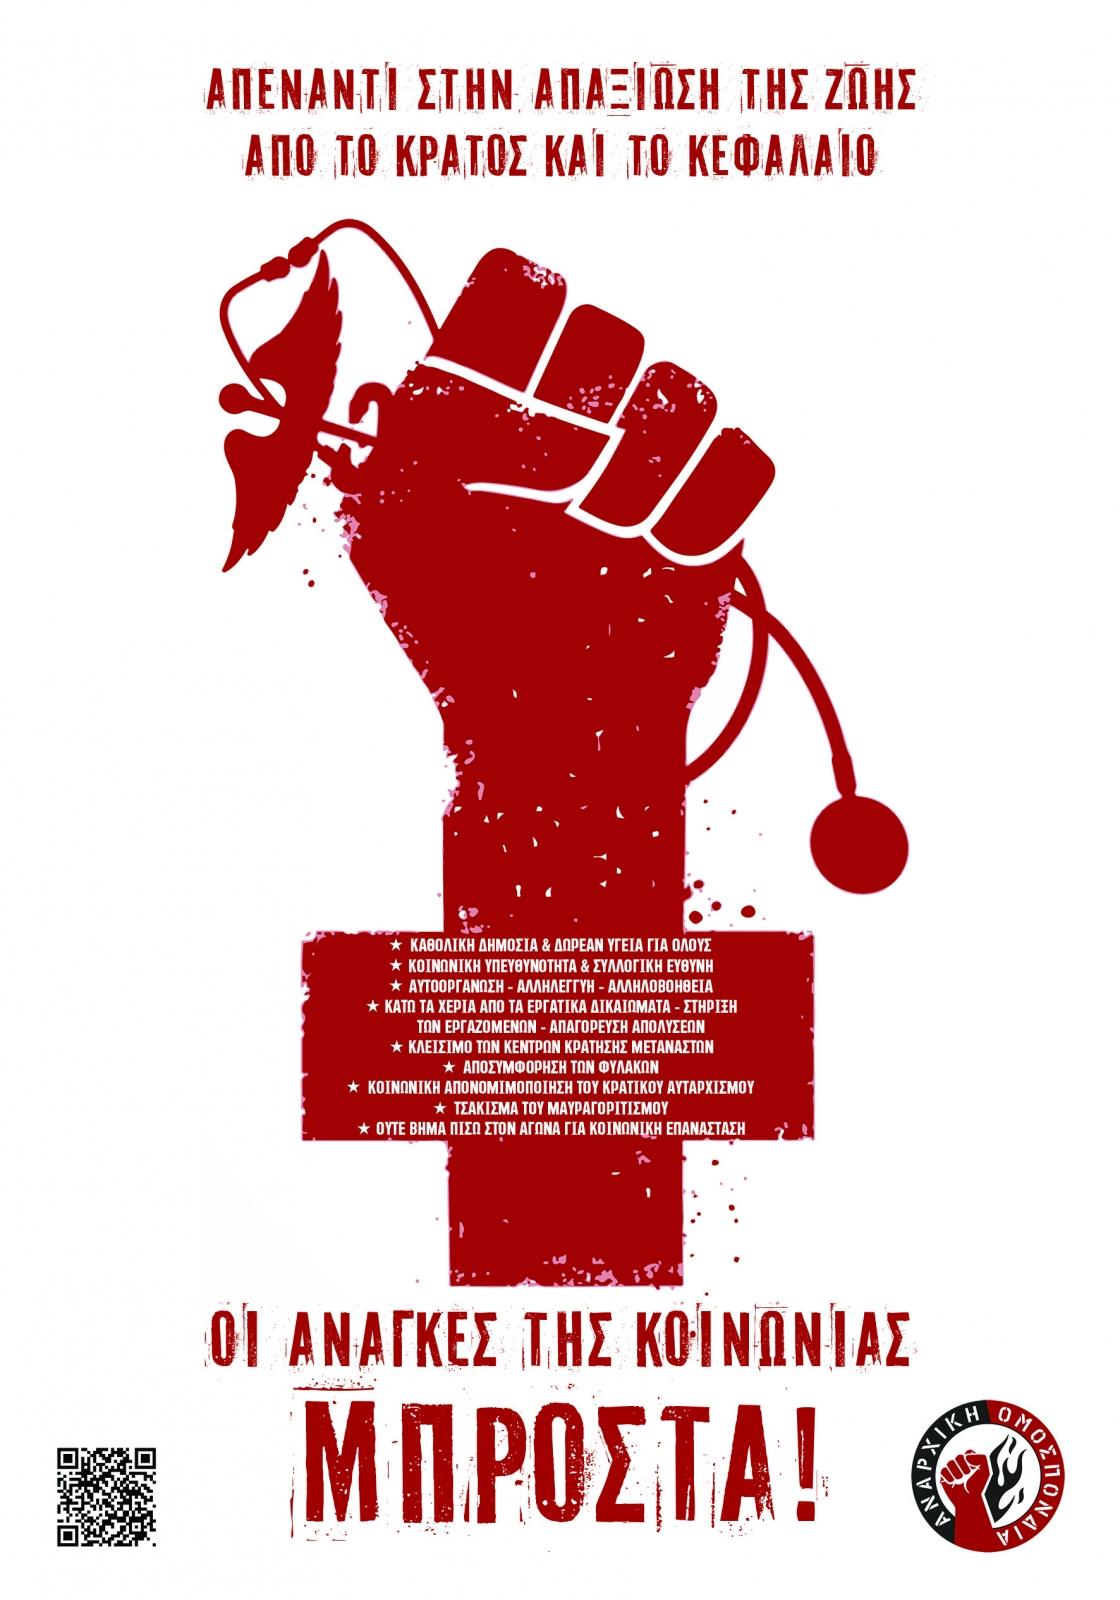 Ανακοίνωση & αφίσα της Αναρχικής Ομοσπονδίας για την πανδημία του κορονοϊού